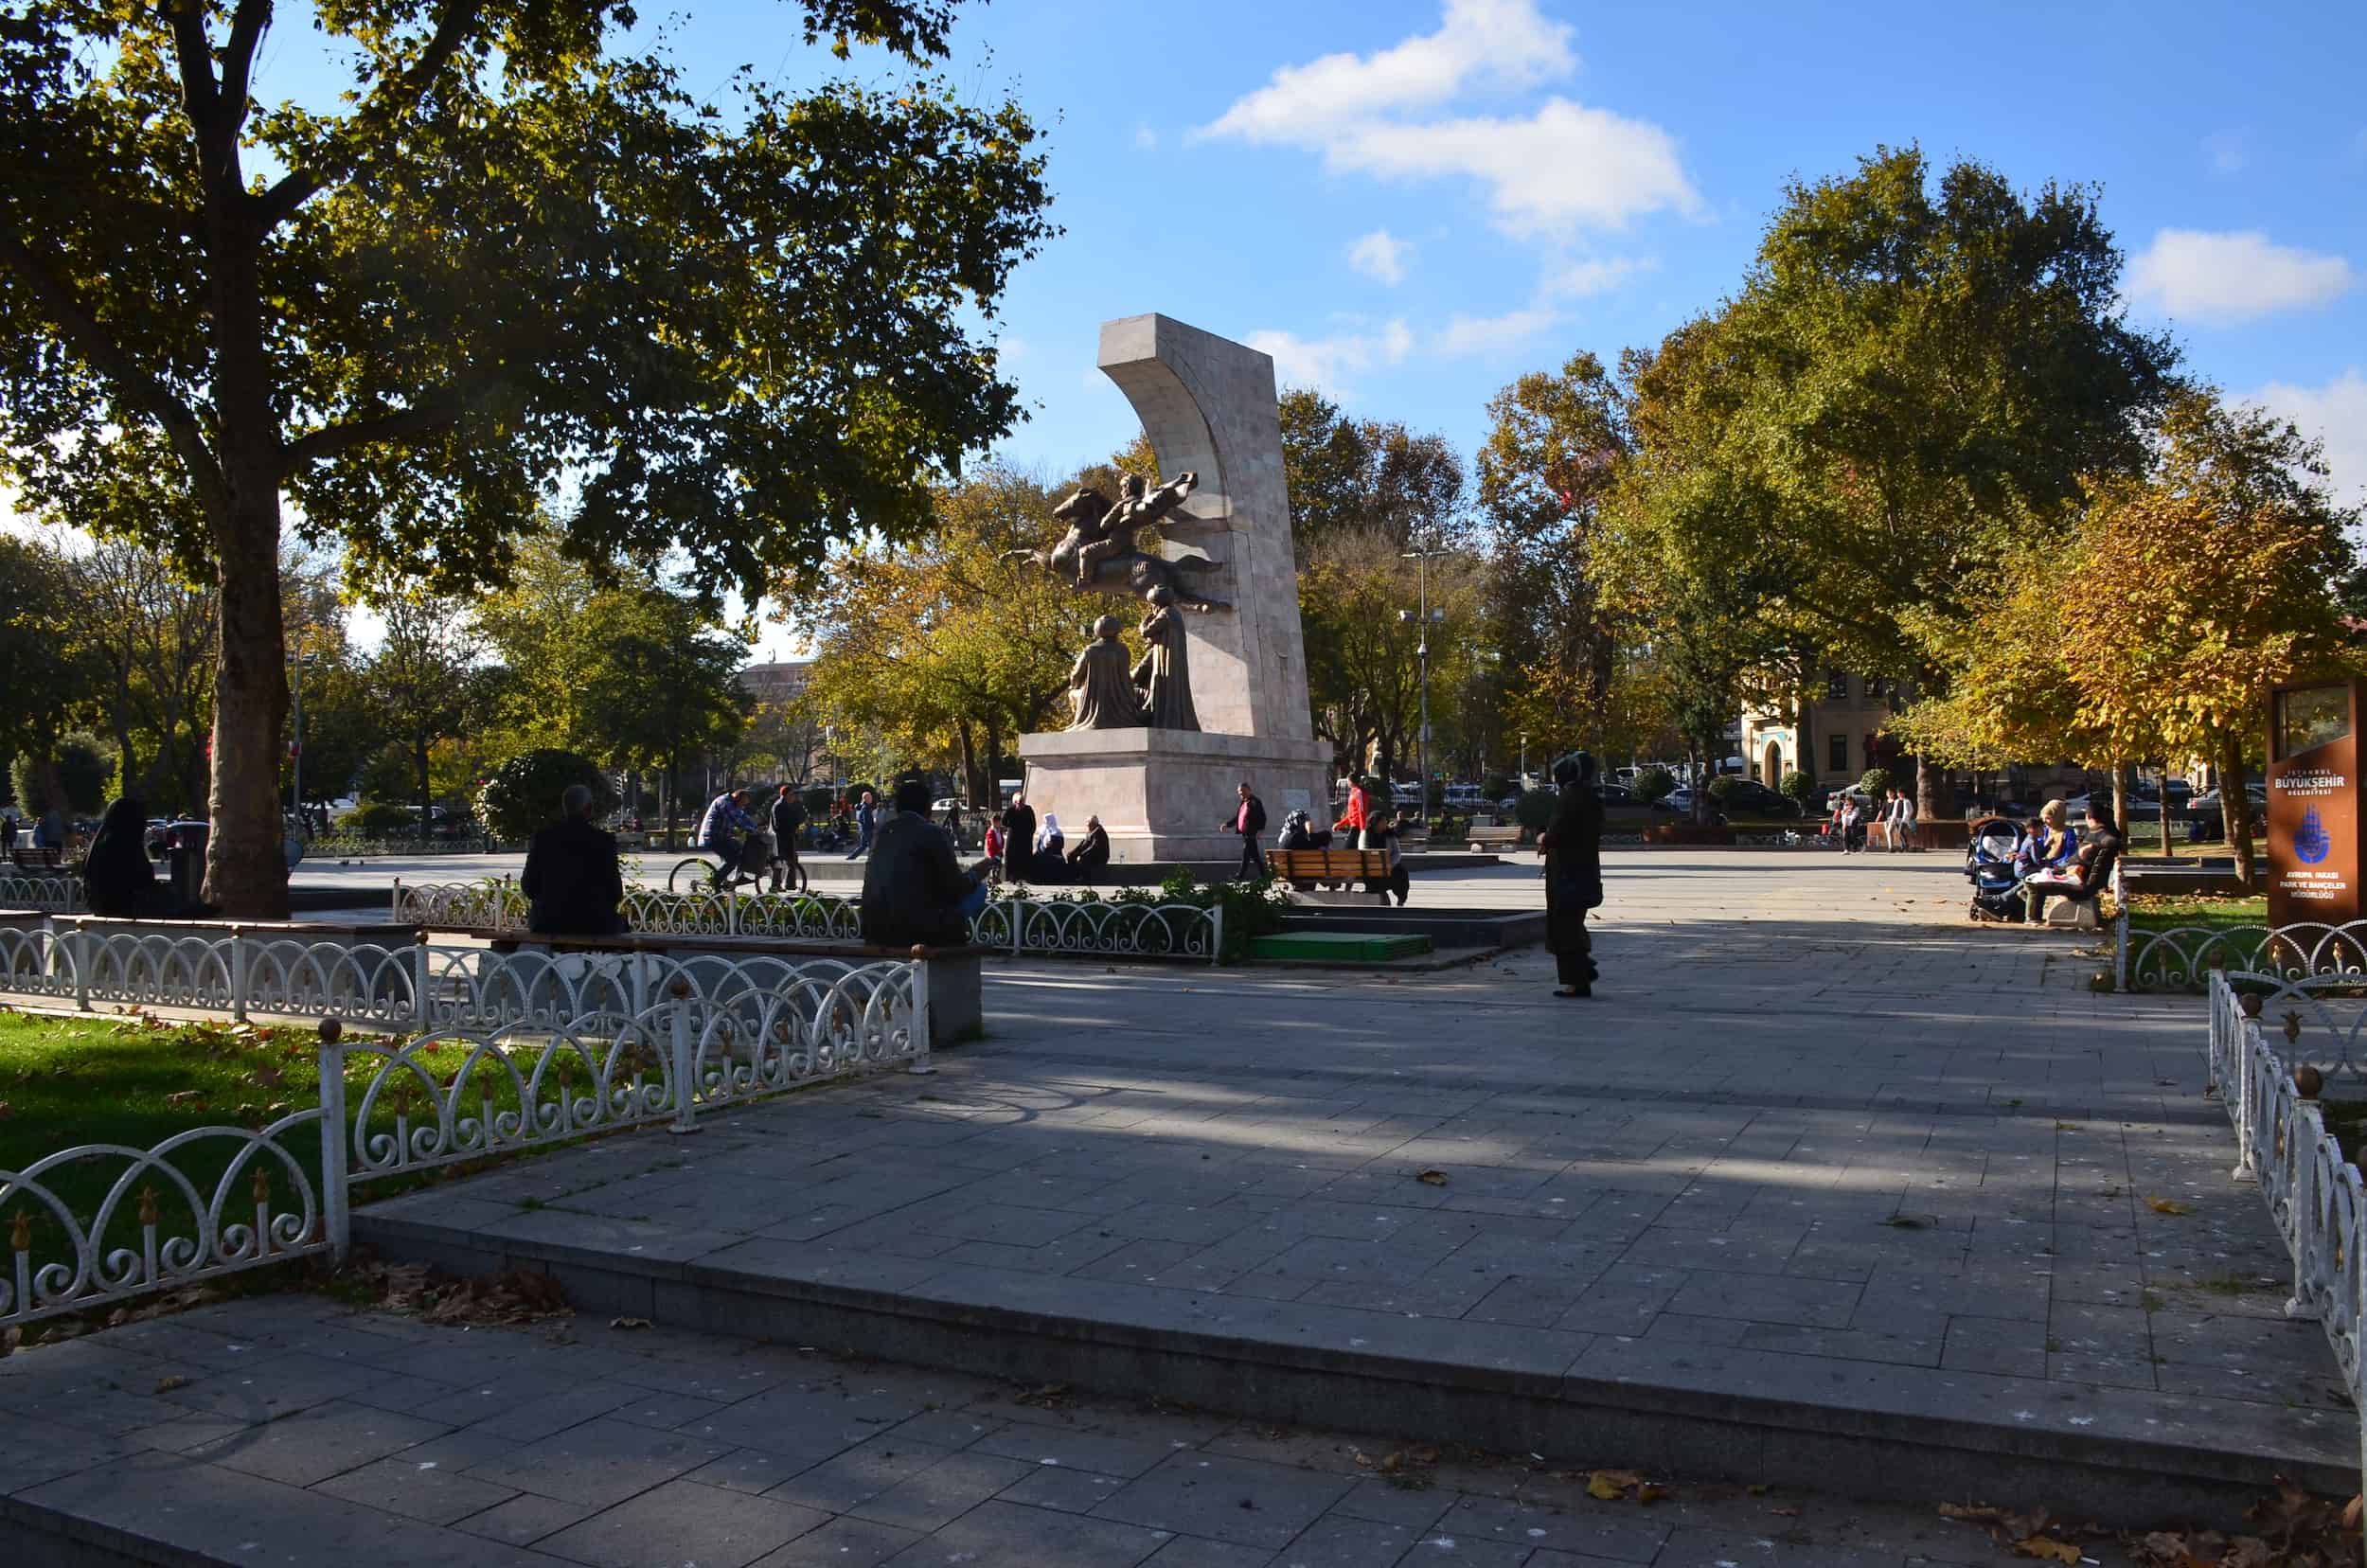 Fatih Memorial Park in Saraçhane, Istanbul, Turkey